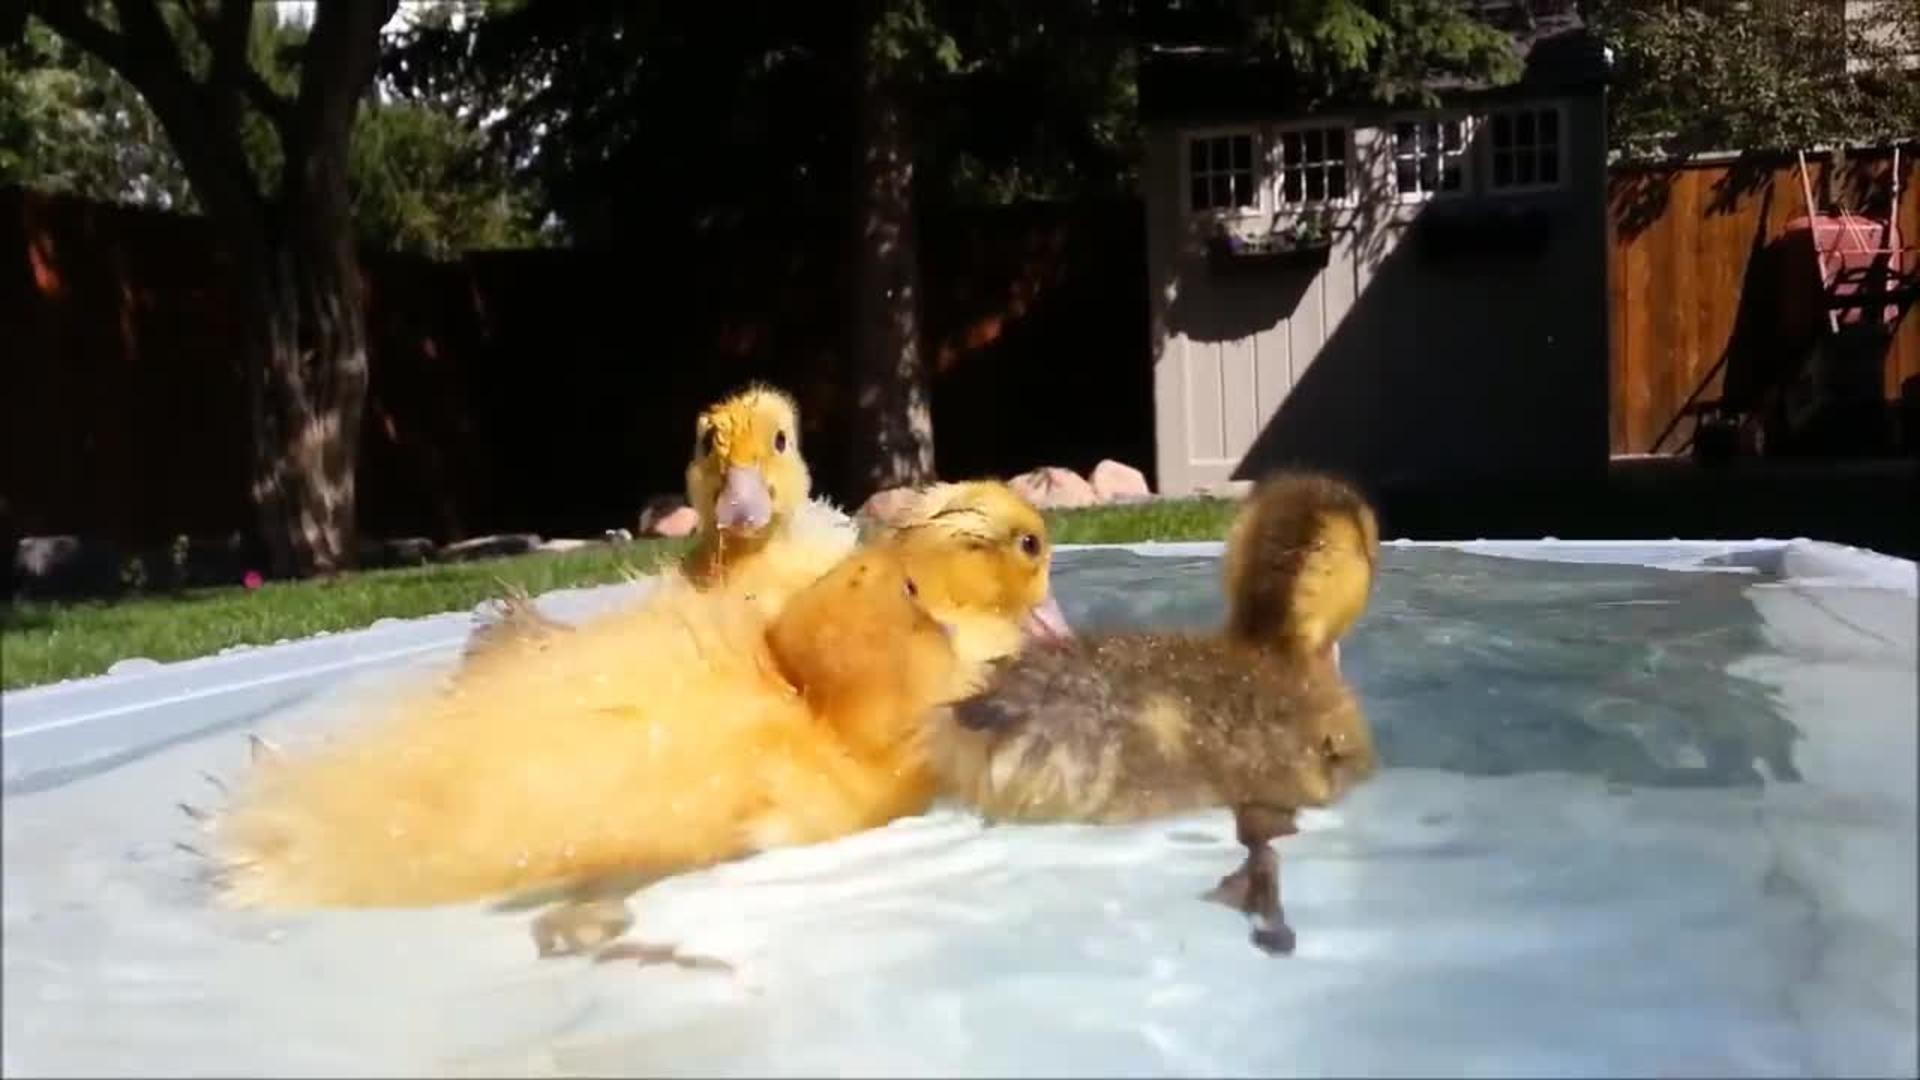 1920x1080 Ducklings Swimming in a Bucket